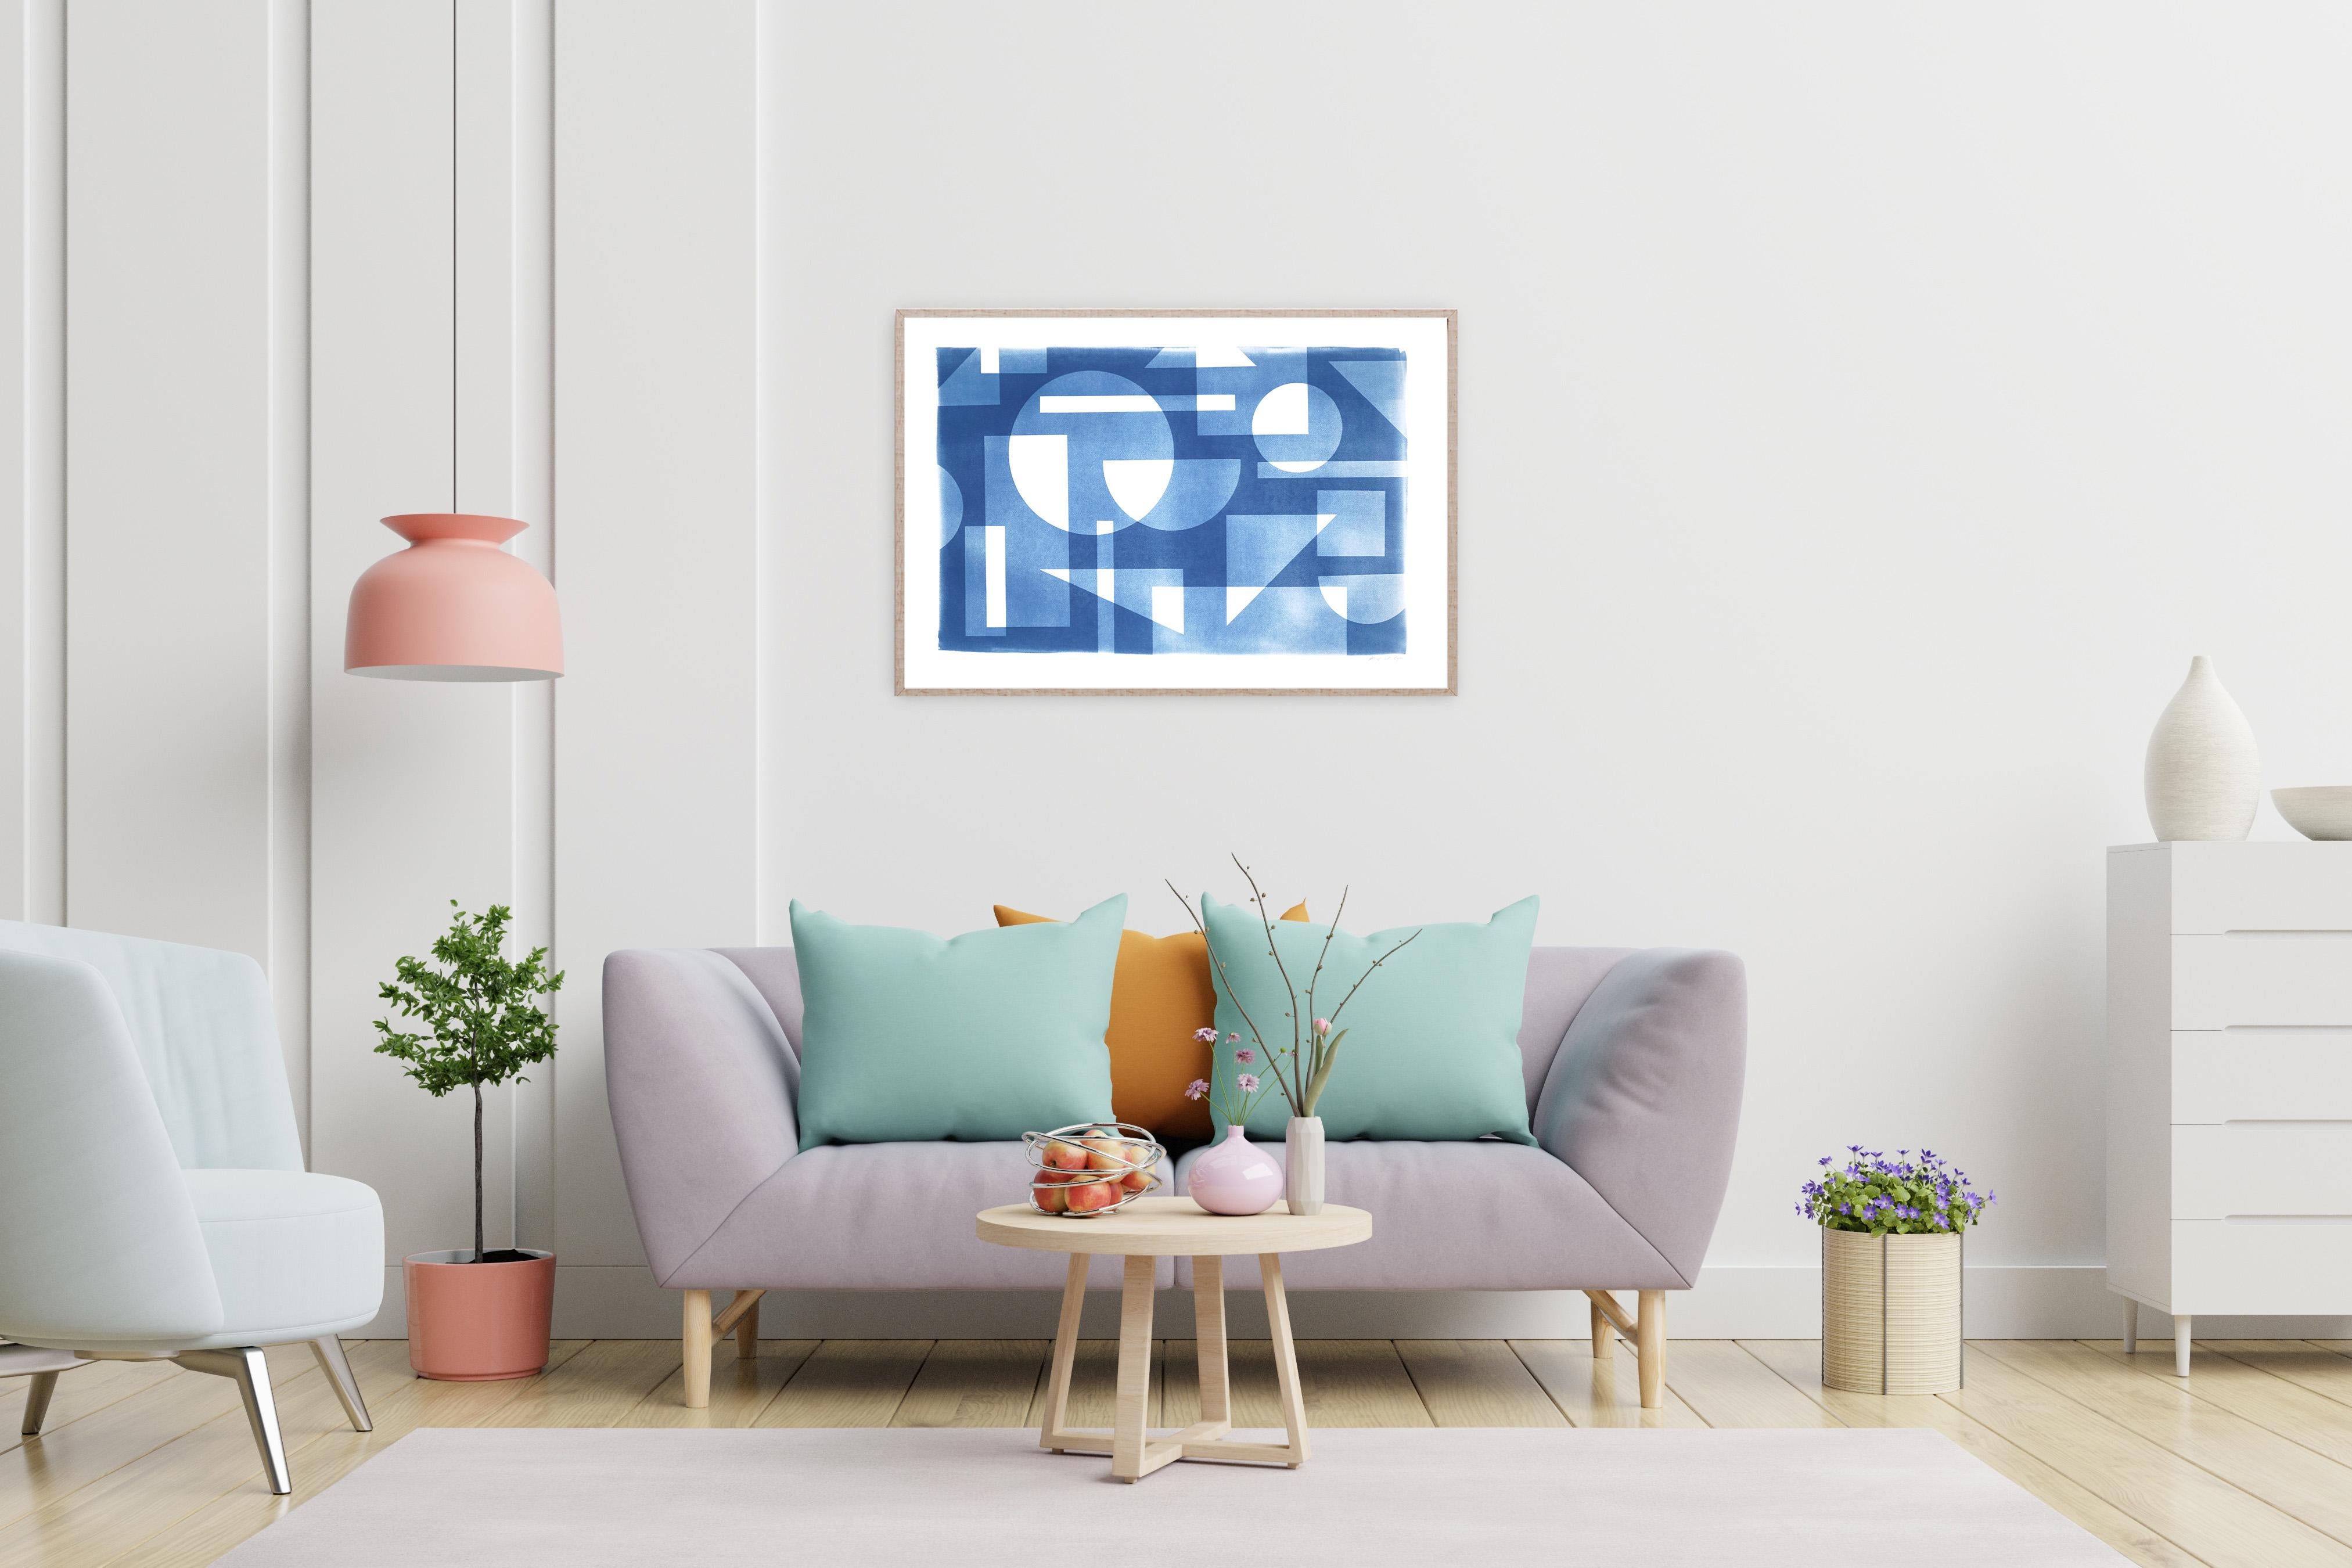 Cyanotype de style Bauhaus de style Art Déco à motif des années trente, géométrie bleue faite à la main  - Bleu Abstract Photograph par Kind of Cyan